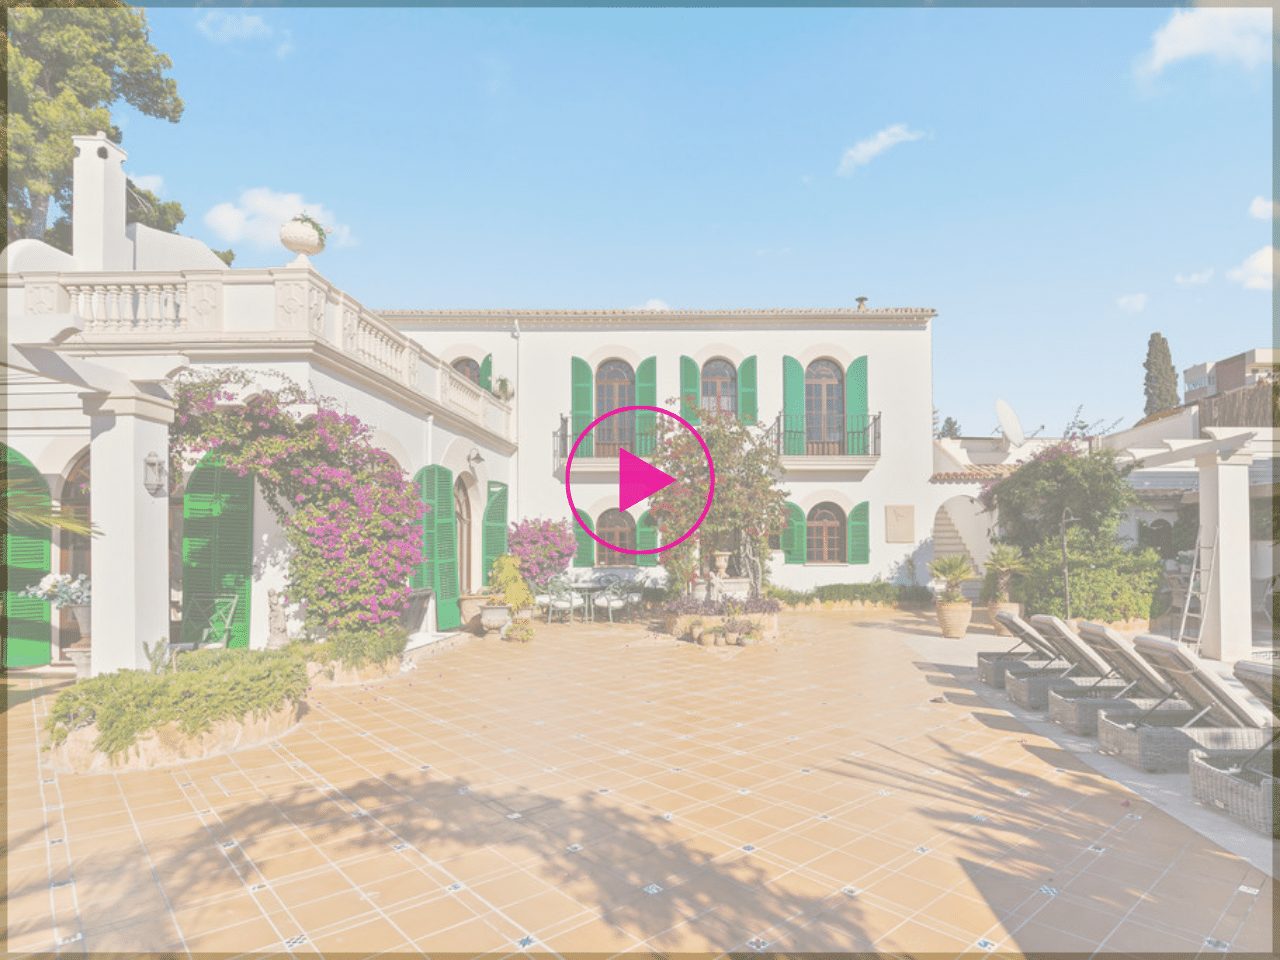 “Mama Mia Villa” – Mediterranean Dream home with seaviews